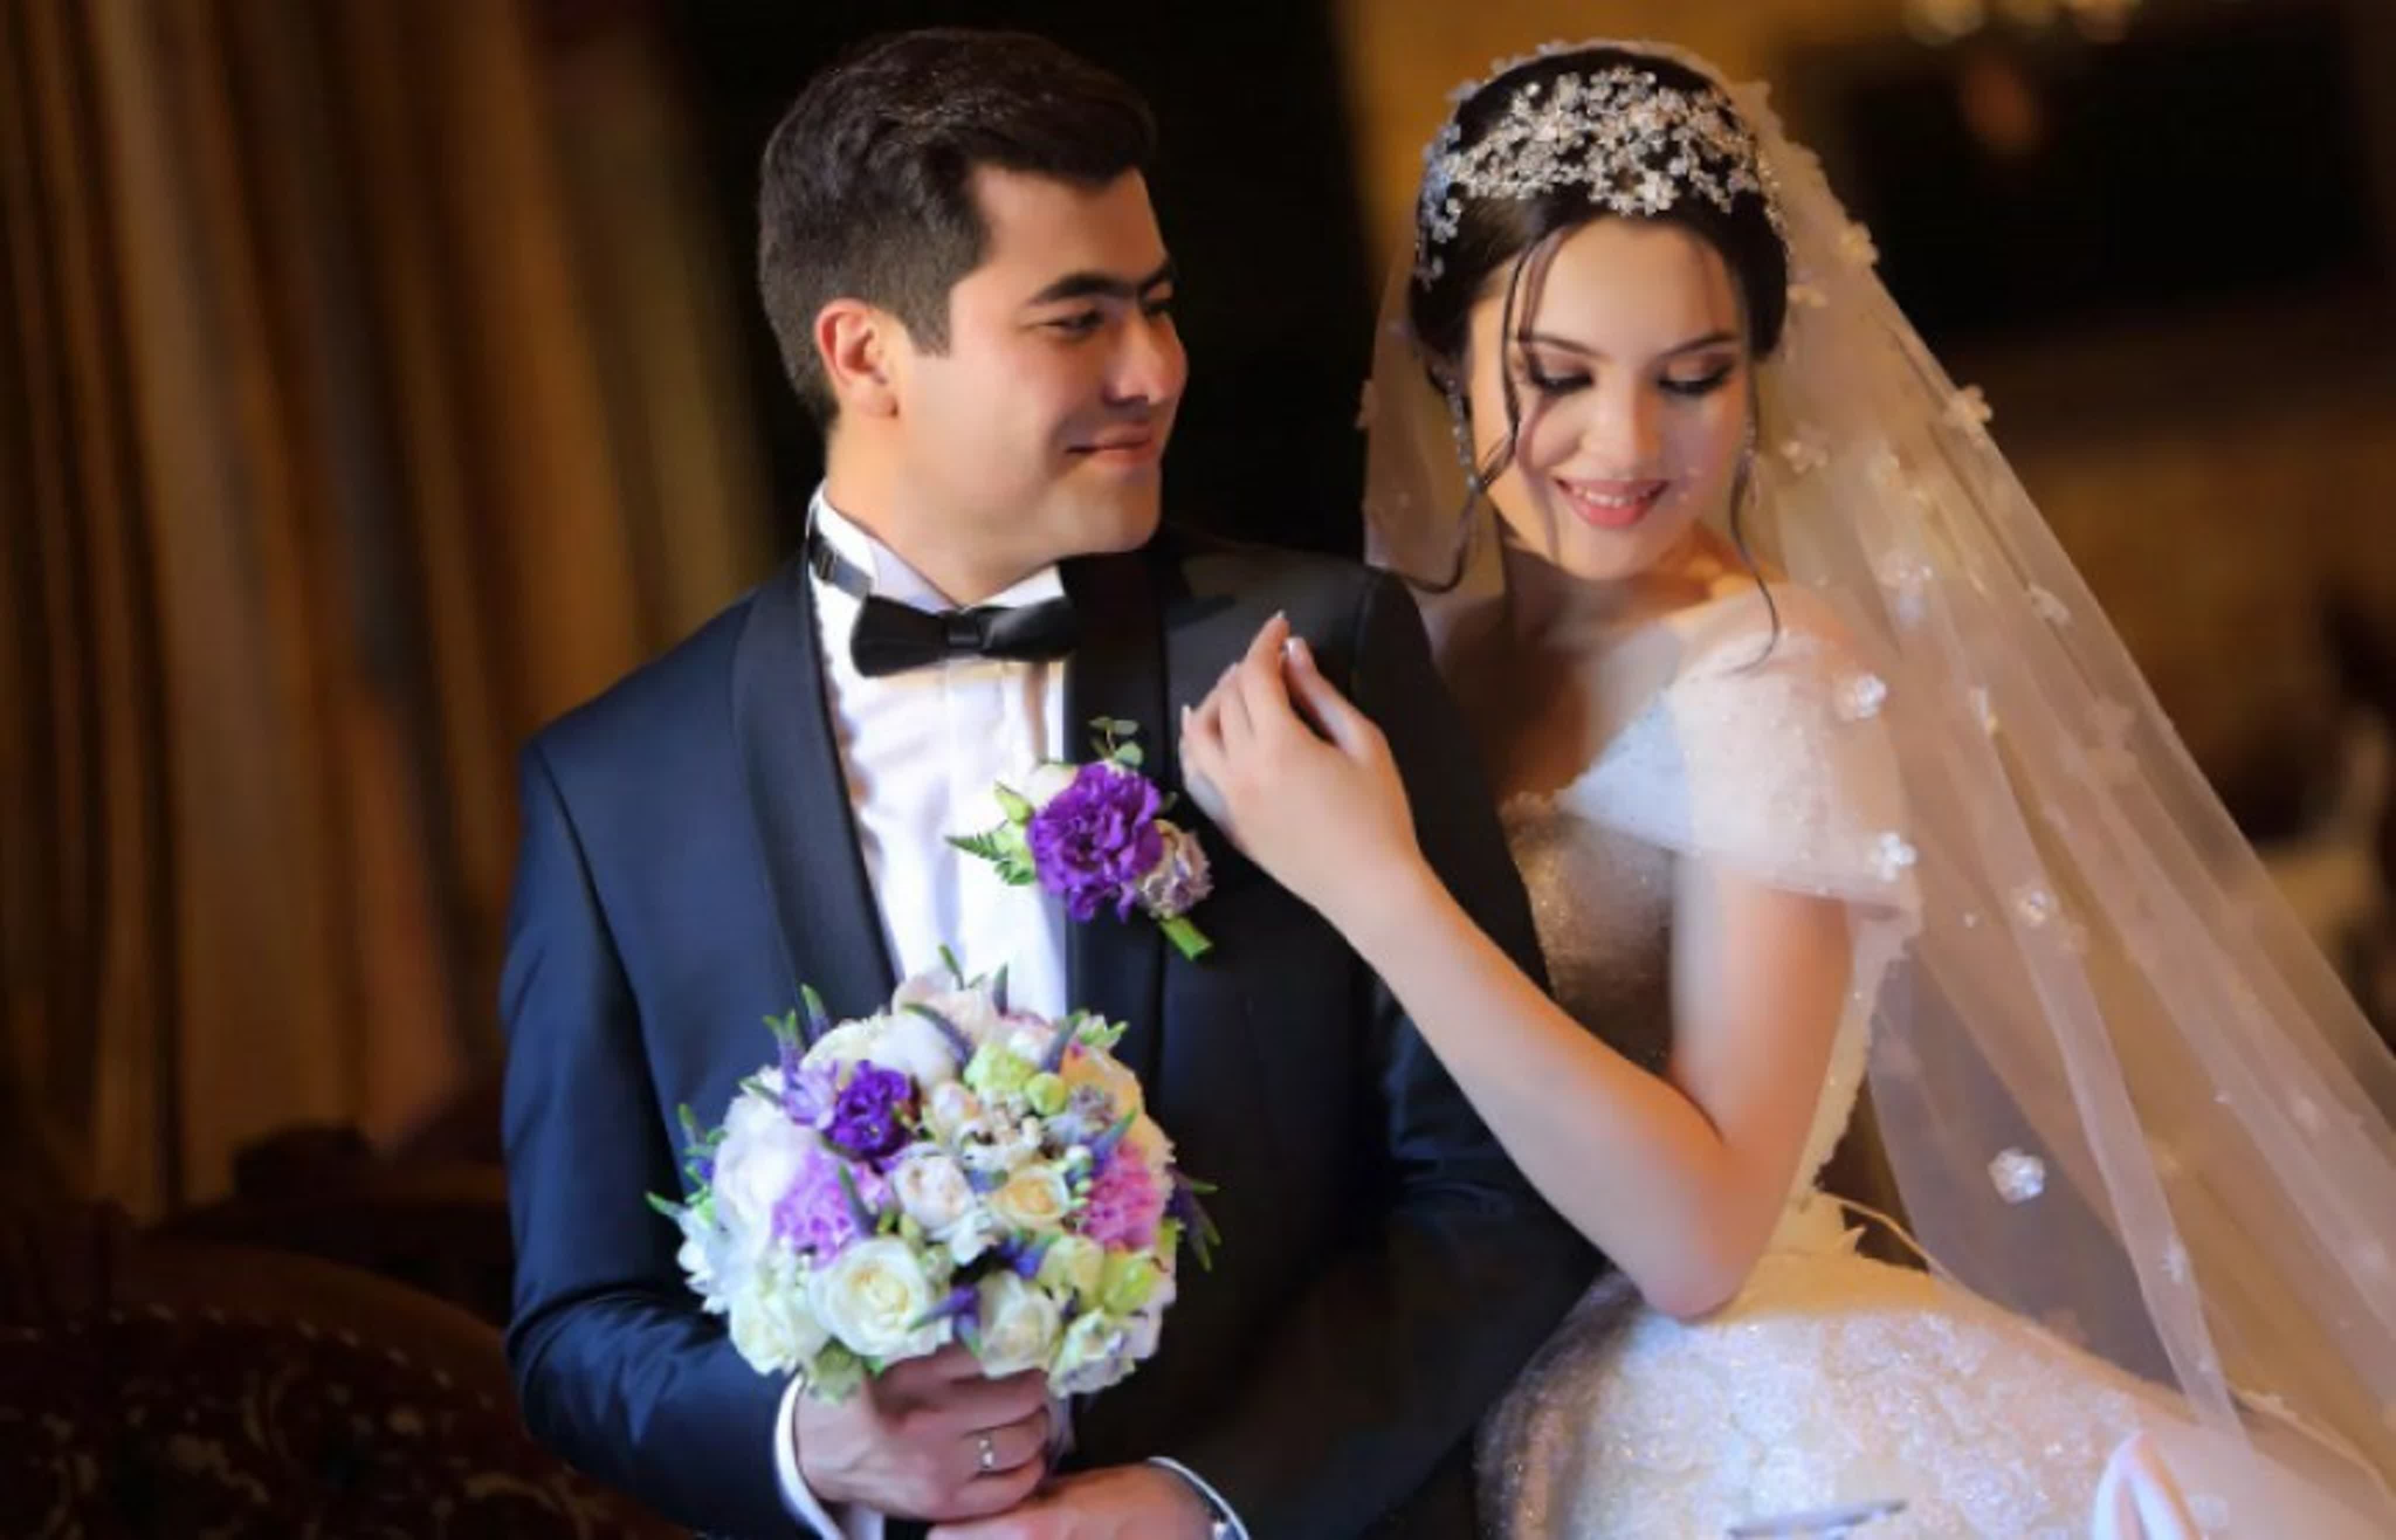 Таджикистан выйду замуж. Свадьба в Таджикистане. Свадьба таджиков. Таджикская свадьба жених и невеста. Свадебные традиции Таджикистана.